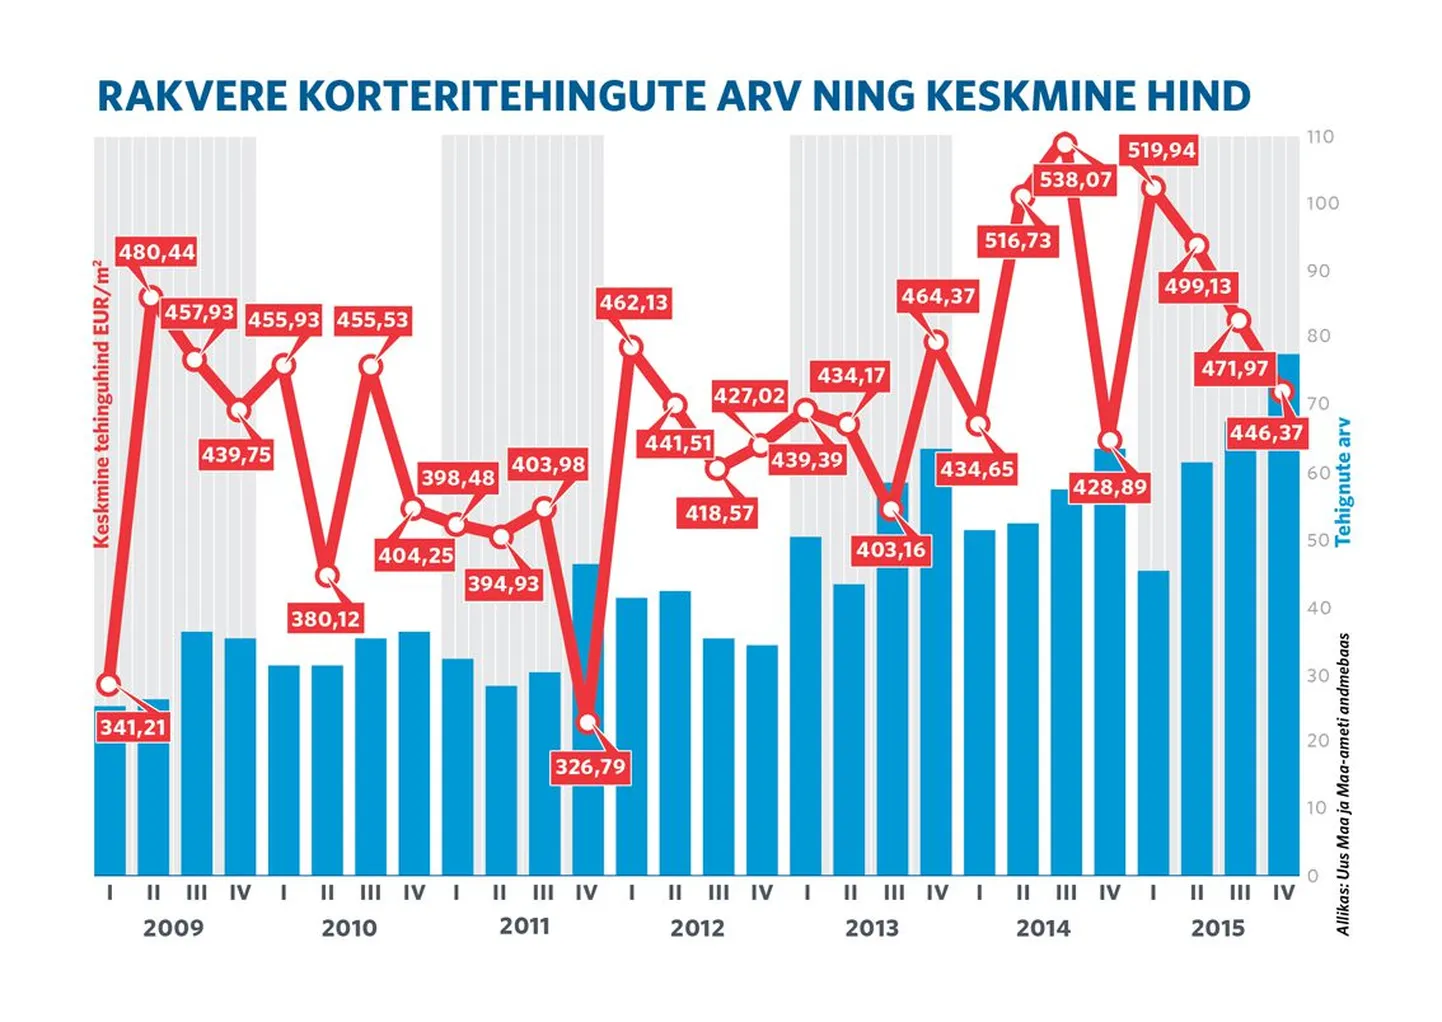 Rakvere korteritehingute arv ning keskmine hind aastatel 2009-2015.